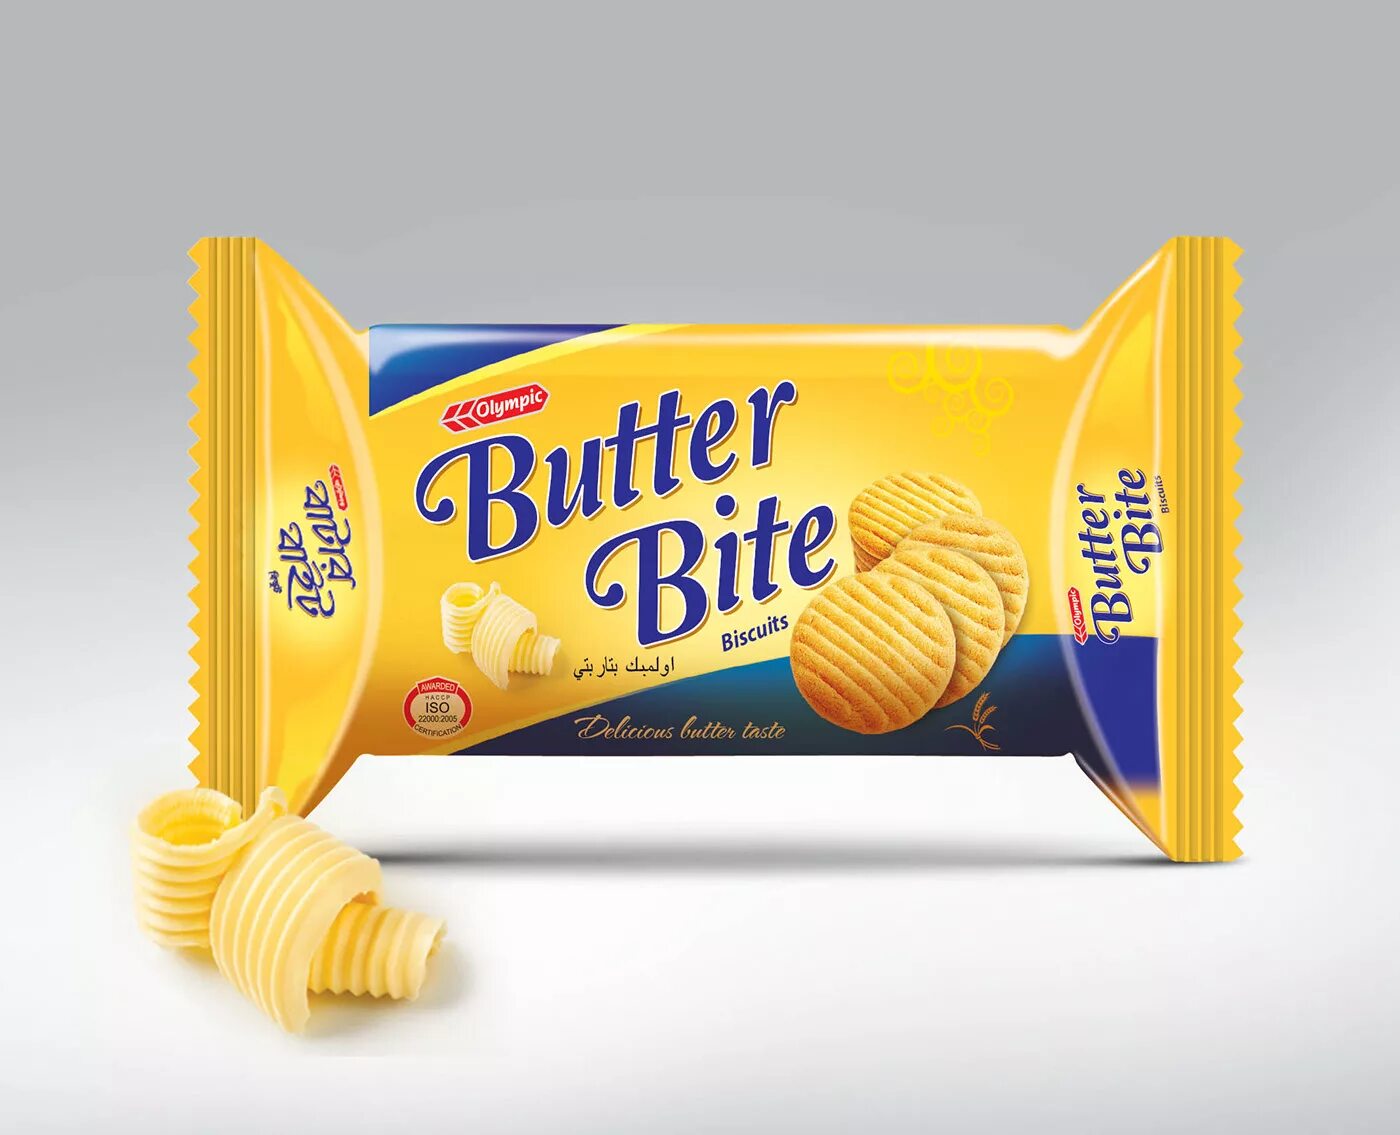 Печенье в упаковке. Дизайн упаковки печенья. Печенье Butter. Bite печенье упаковка.